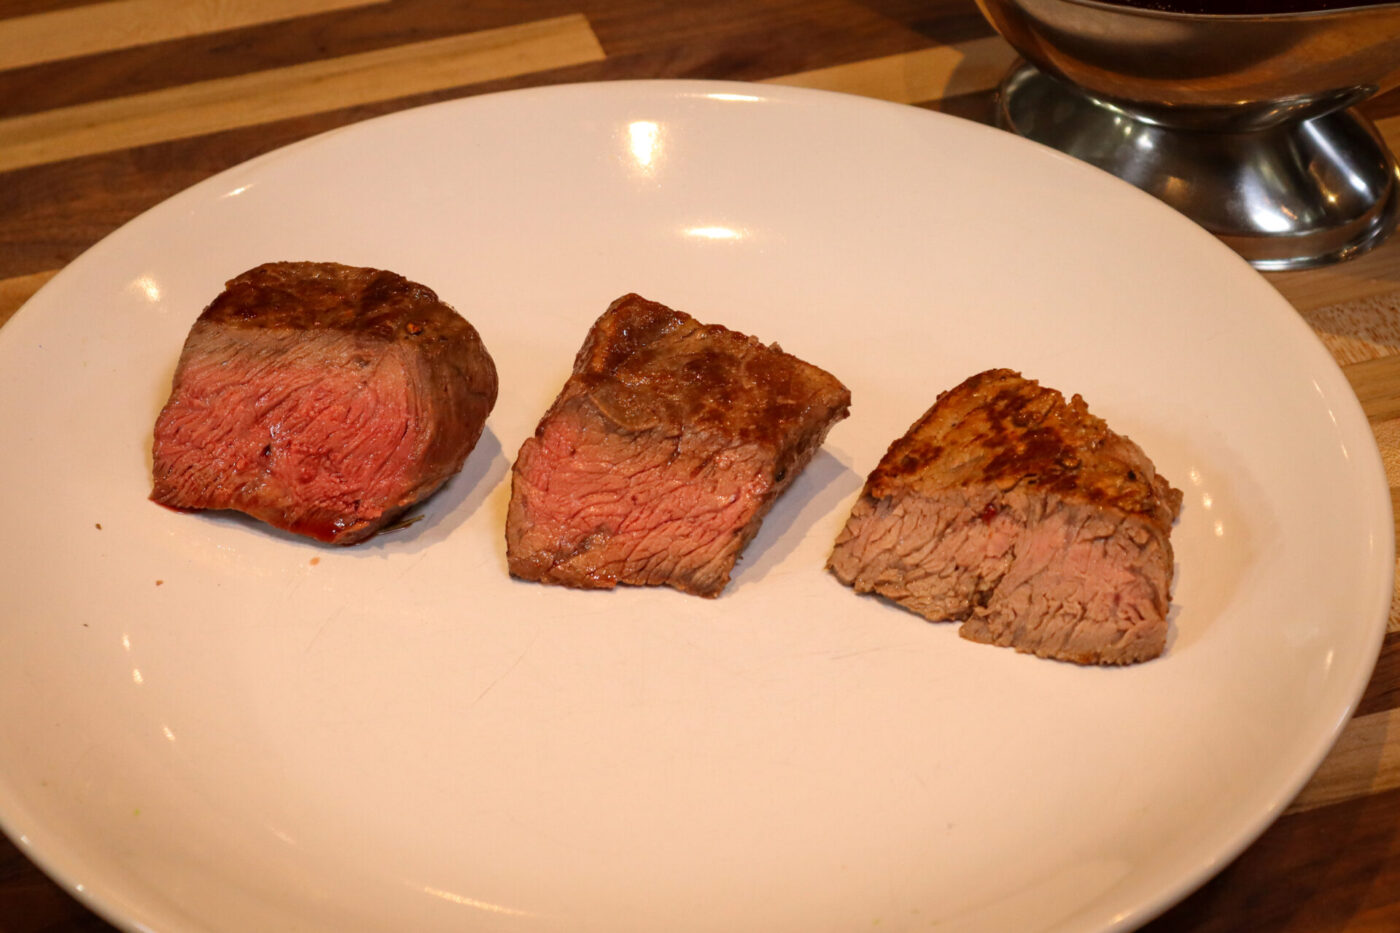 Beef Steak medim rare medium well done